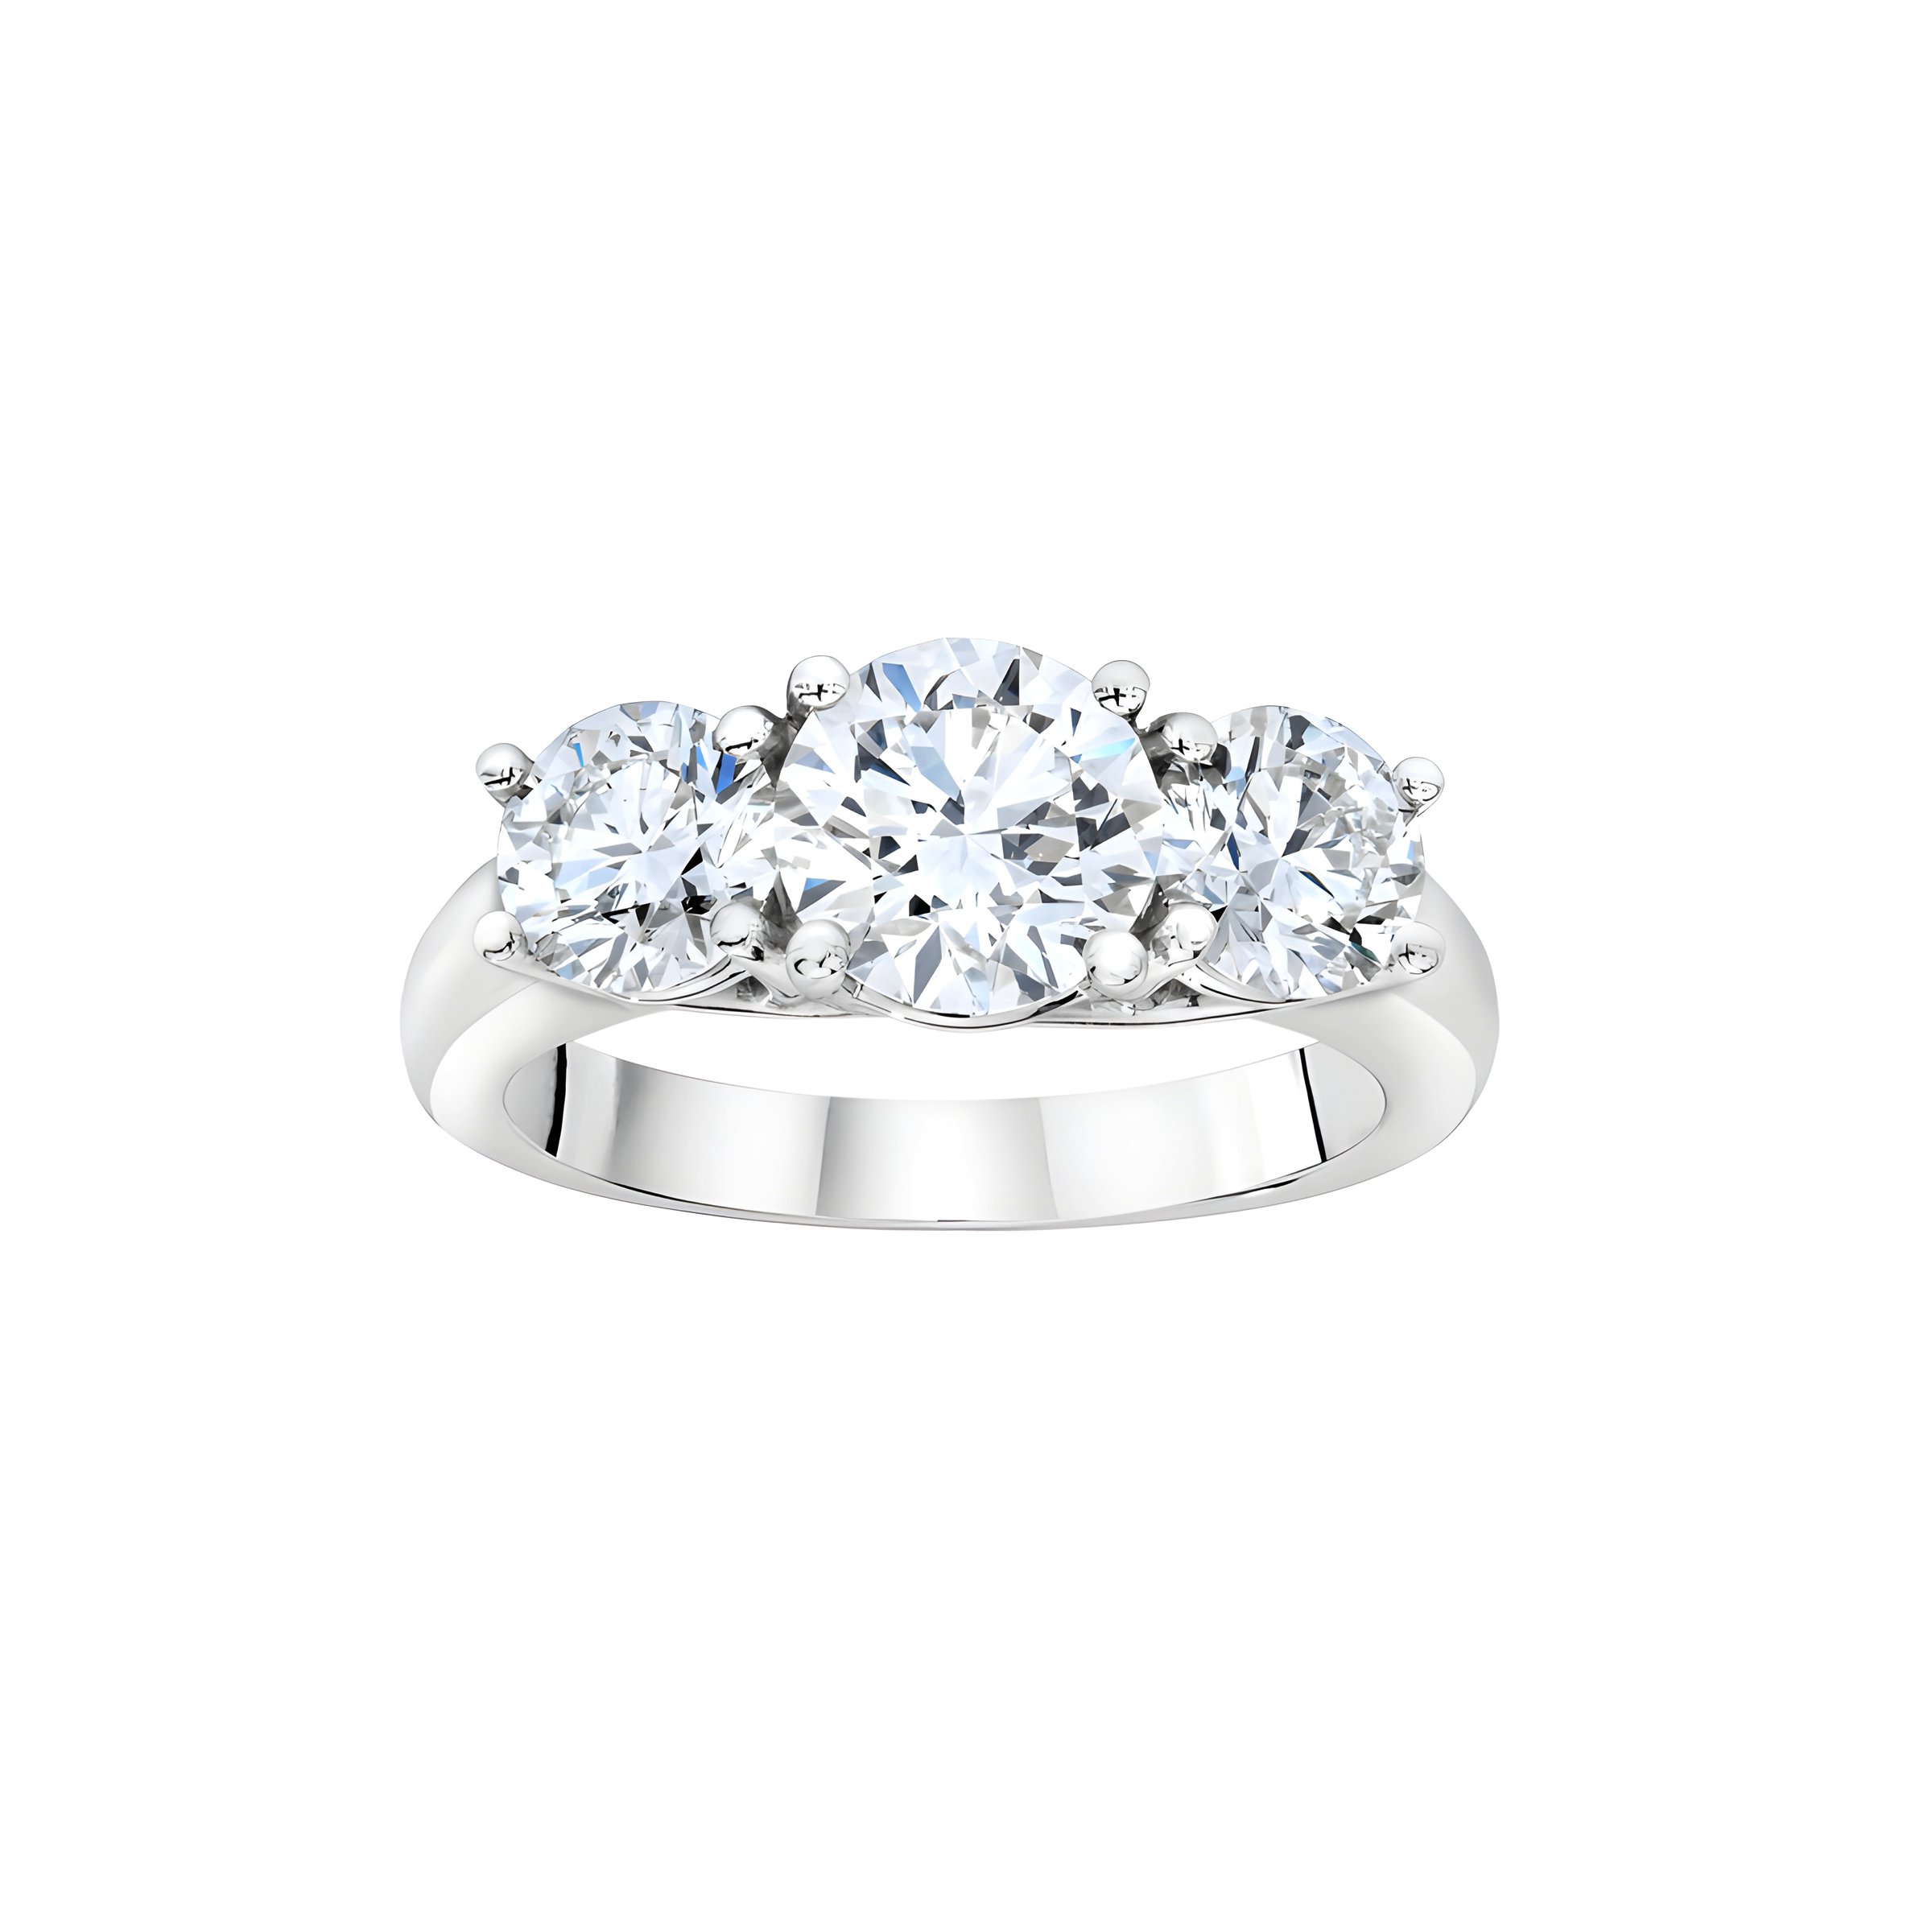 Round Brilliant Three Stone Diamond Ring in Platinum